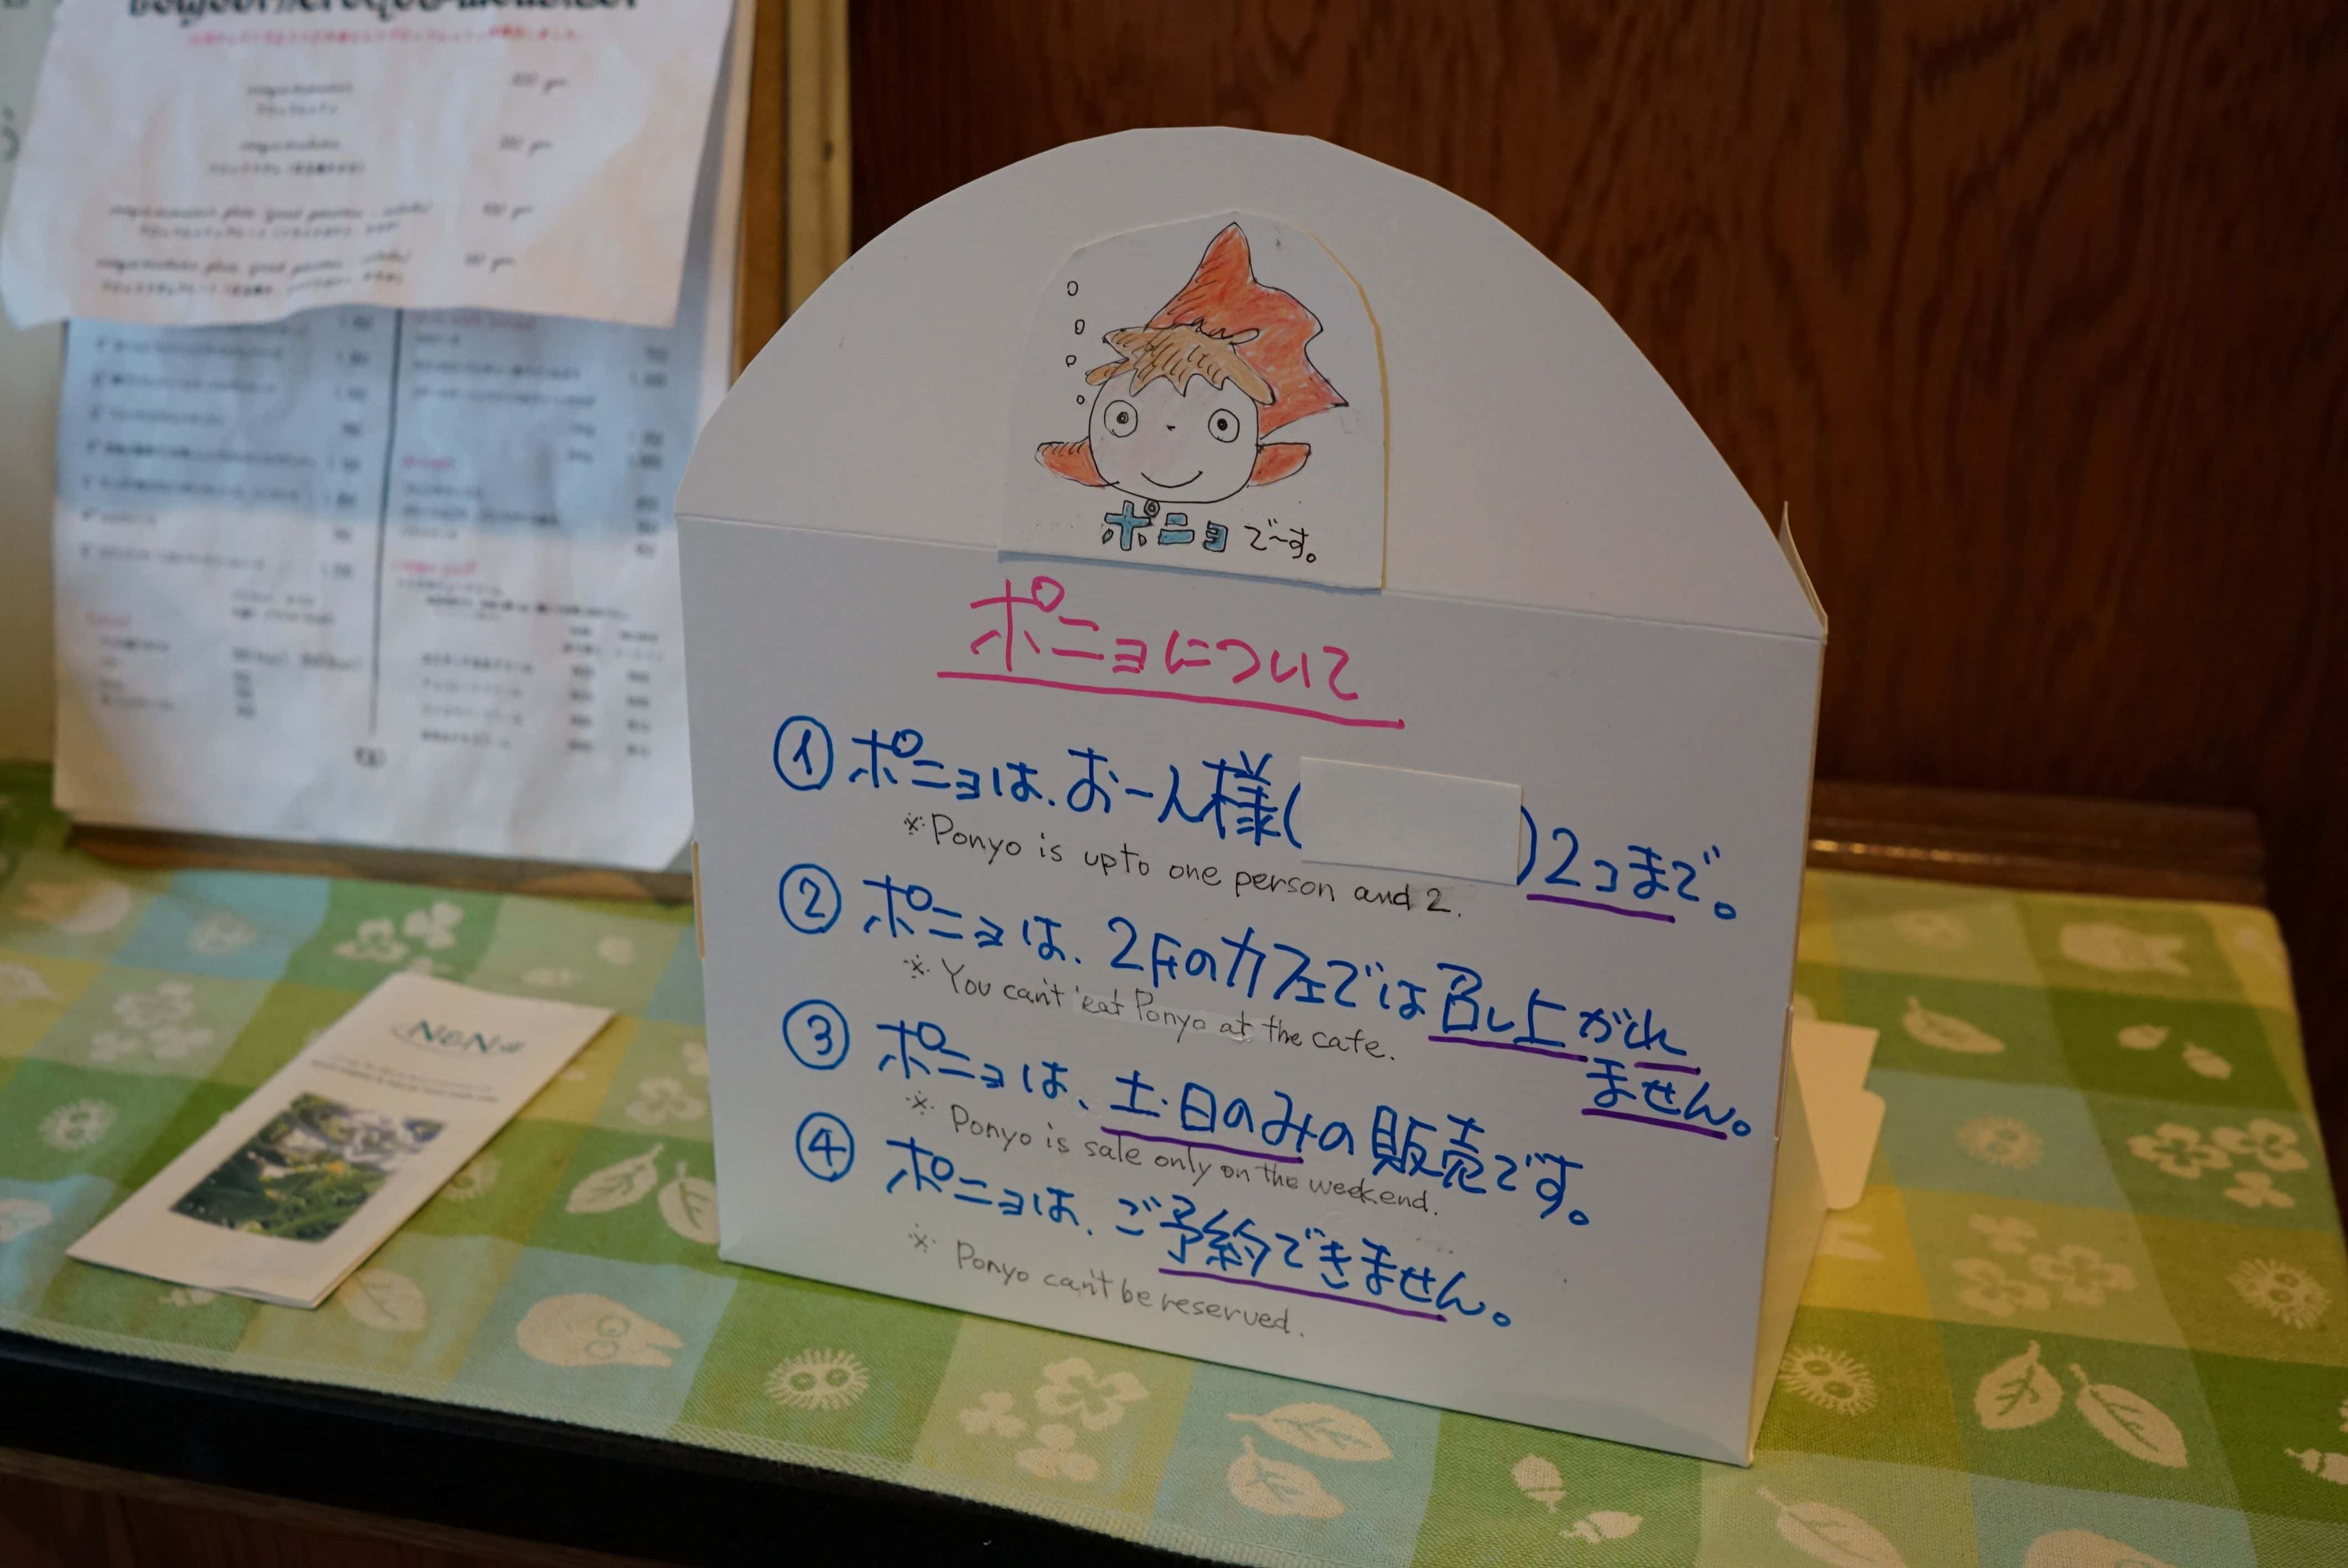 ร้าน Shirohige's Cream Puff Shop หรือที่ป้ายร้านชื่อ Tolo Coffee Bakery คาเฟ่น่ารักในโตเกียว ชูครีม totoro